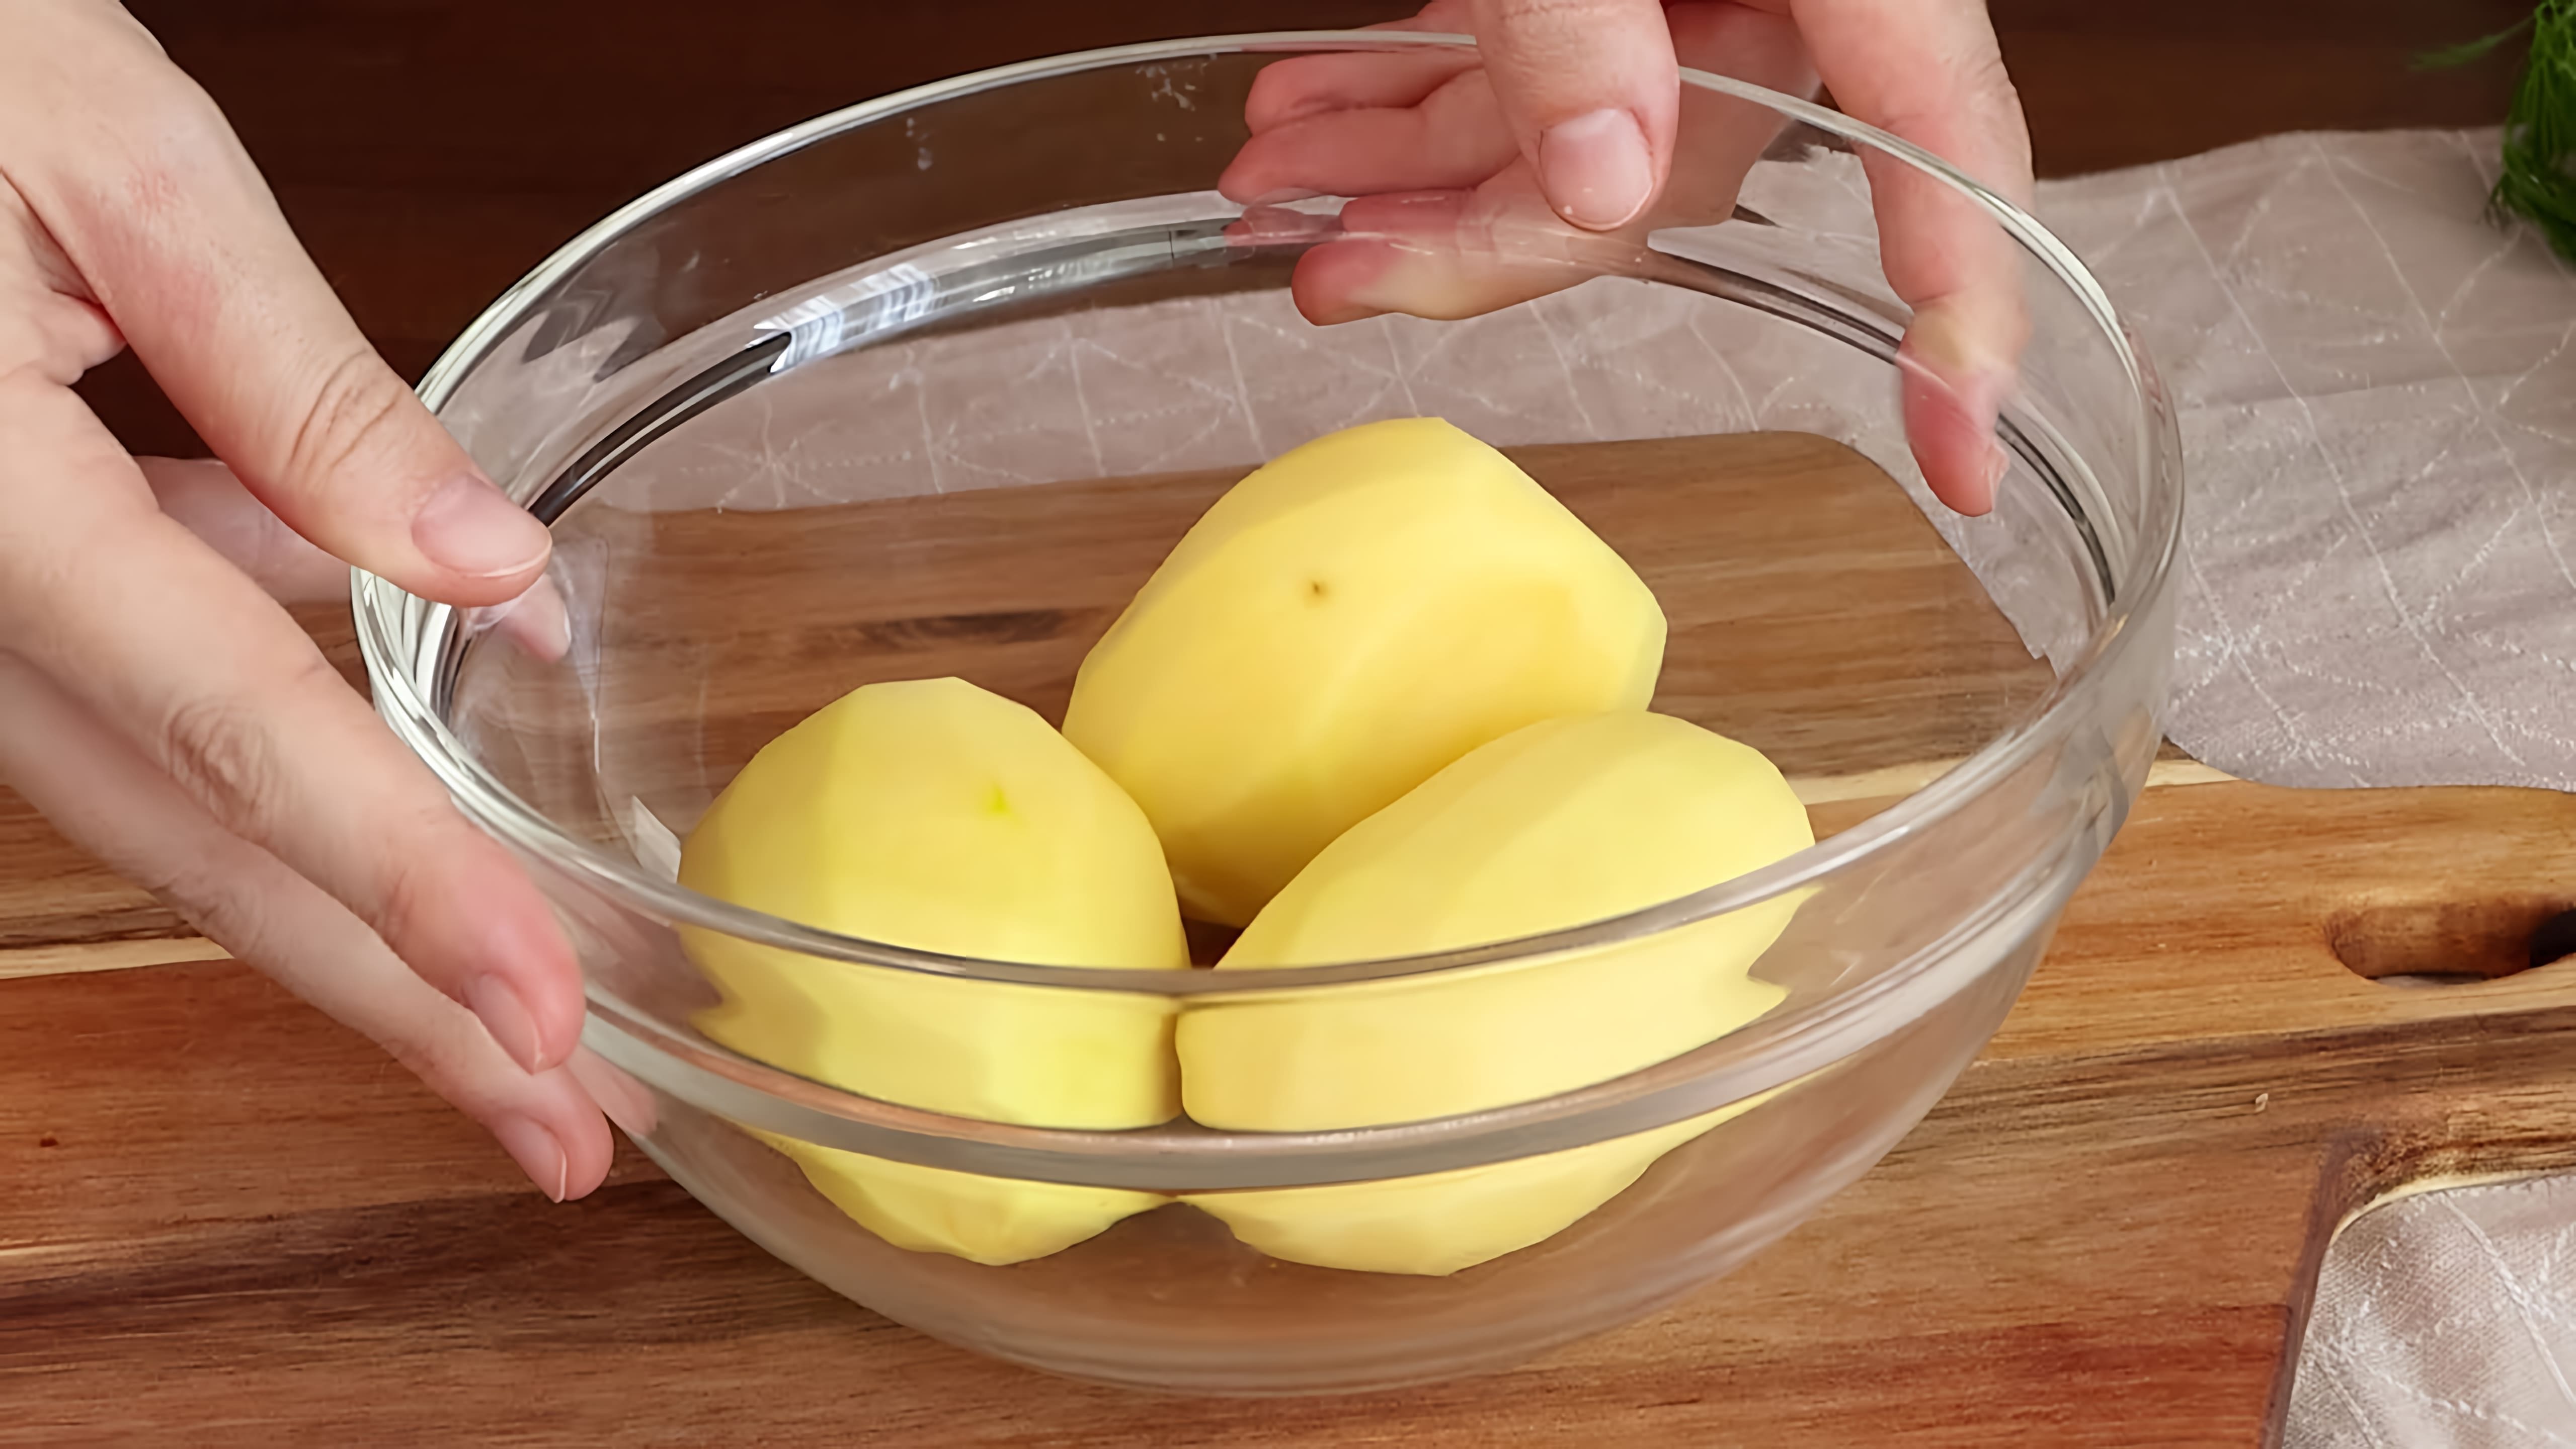 В этом видео демонстрируется процесс приготовления простого, быстрого и вкусного завтрака из трех картофелин и трех яиц